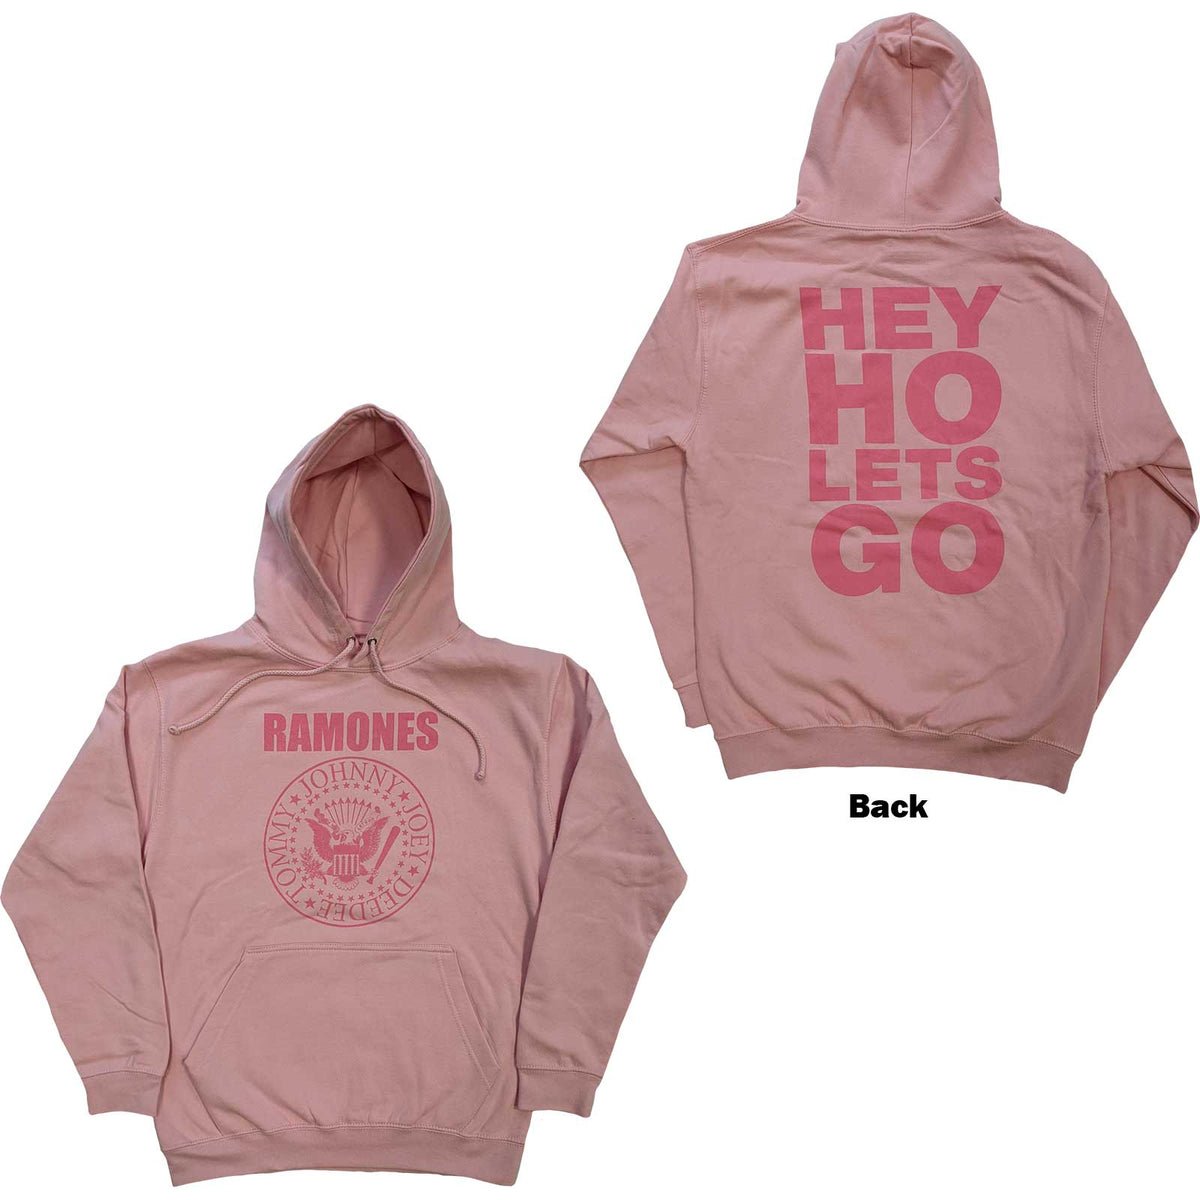 Ramones Adult Unisex Hoodie - Pink Hey Ho Seal - Official Licensed Design